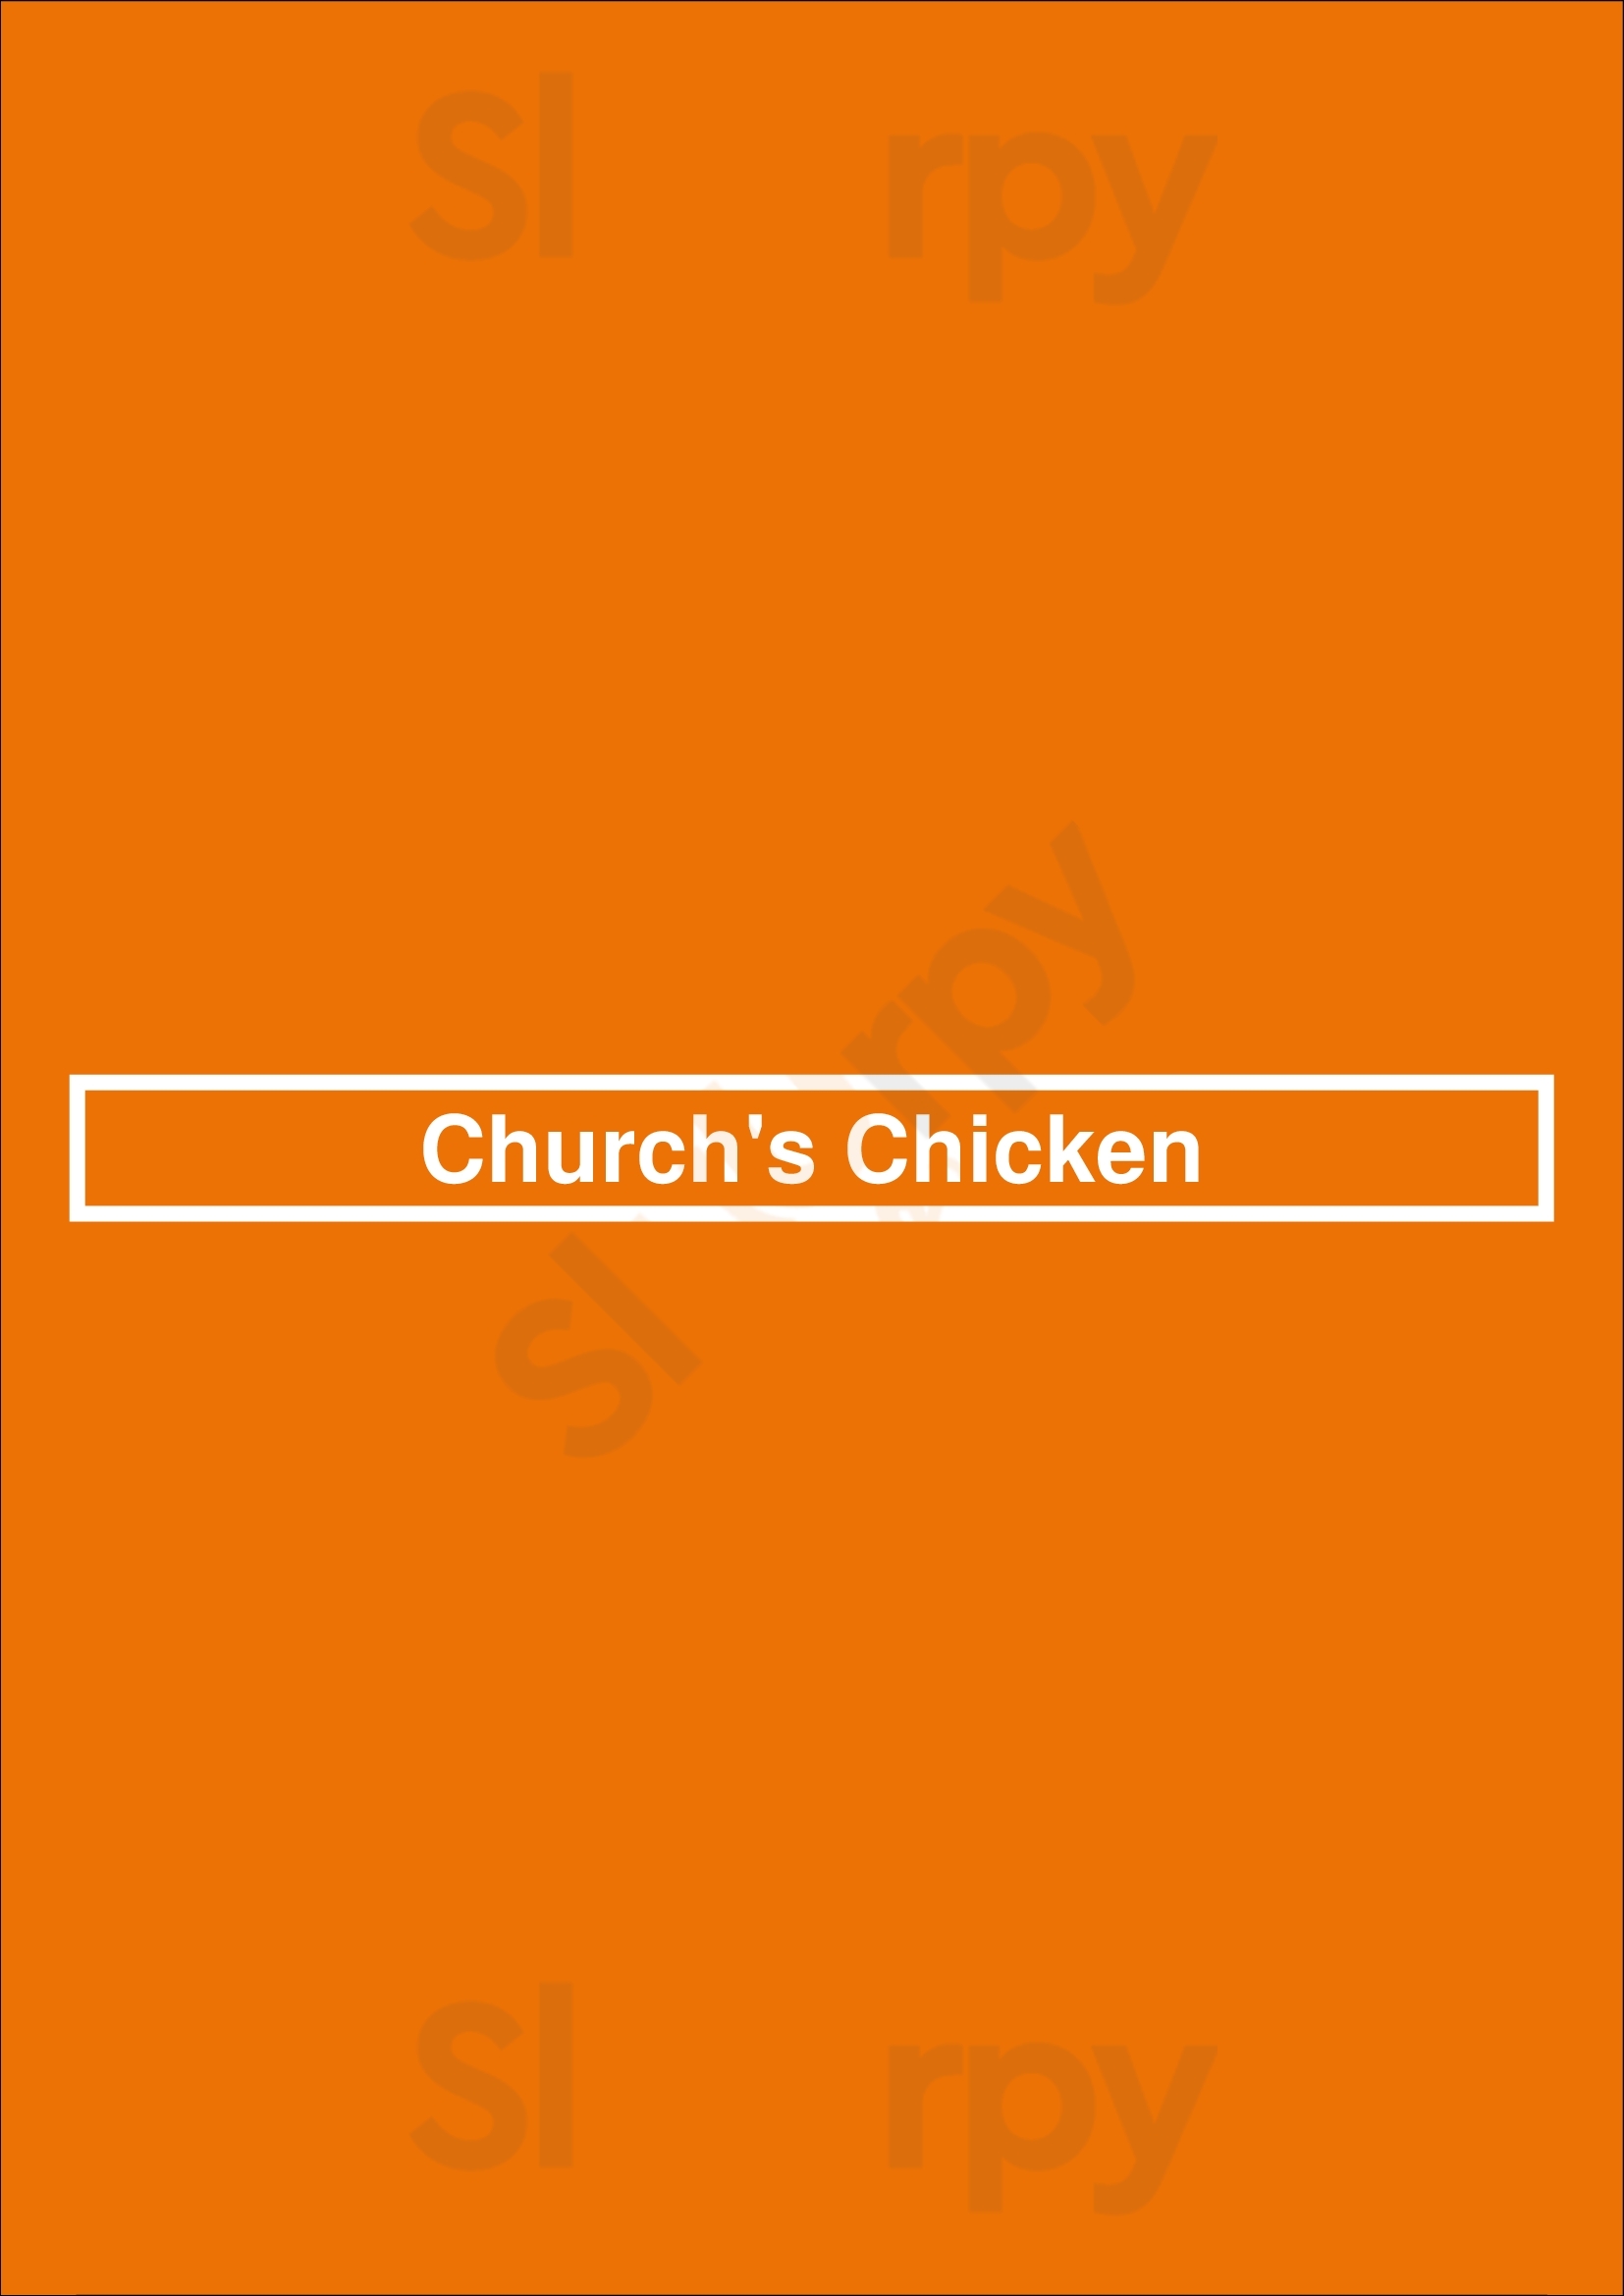 Church's Texas Chicken Tucson Menu - 1